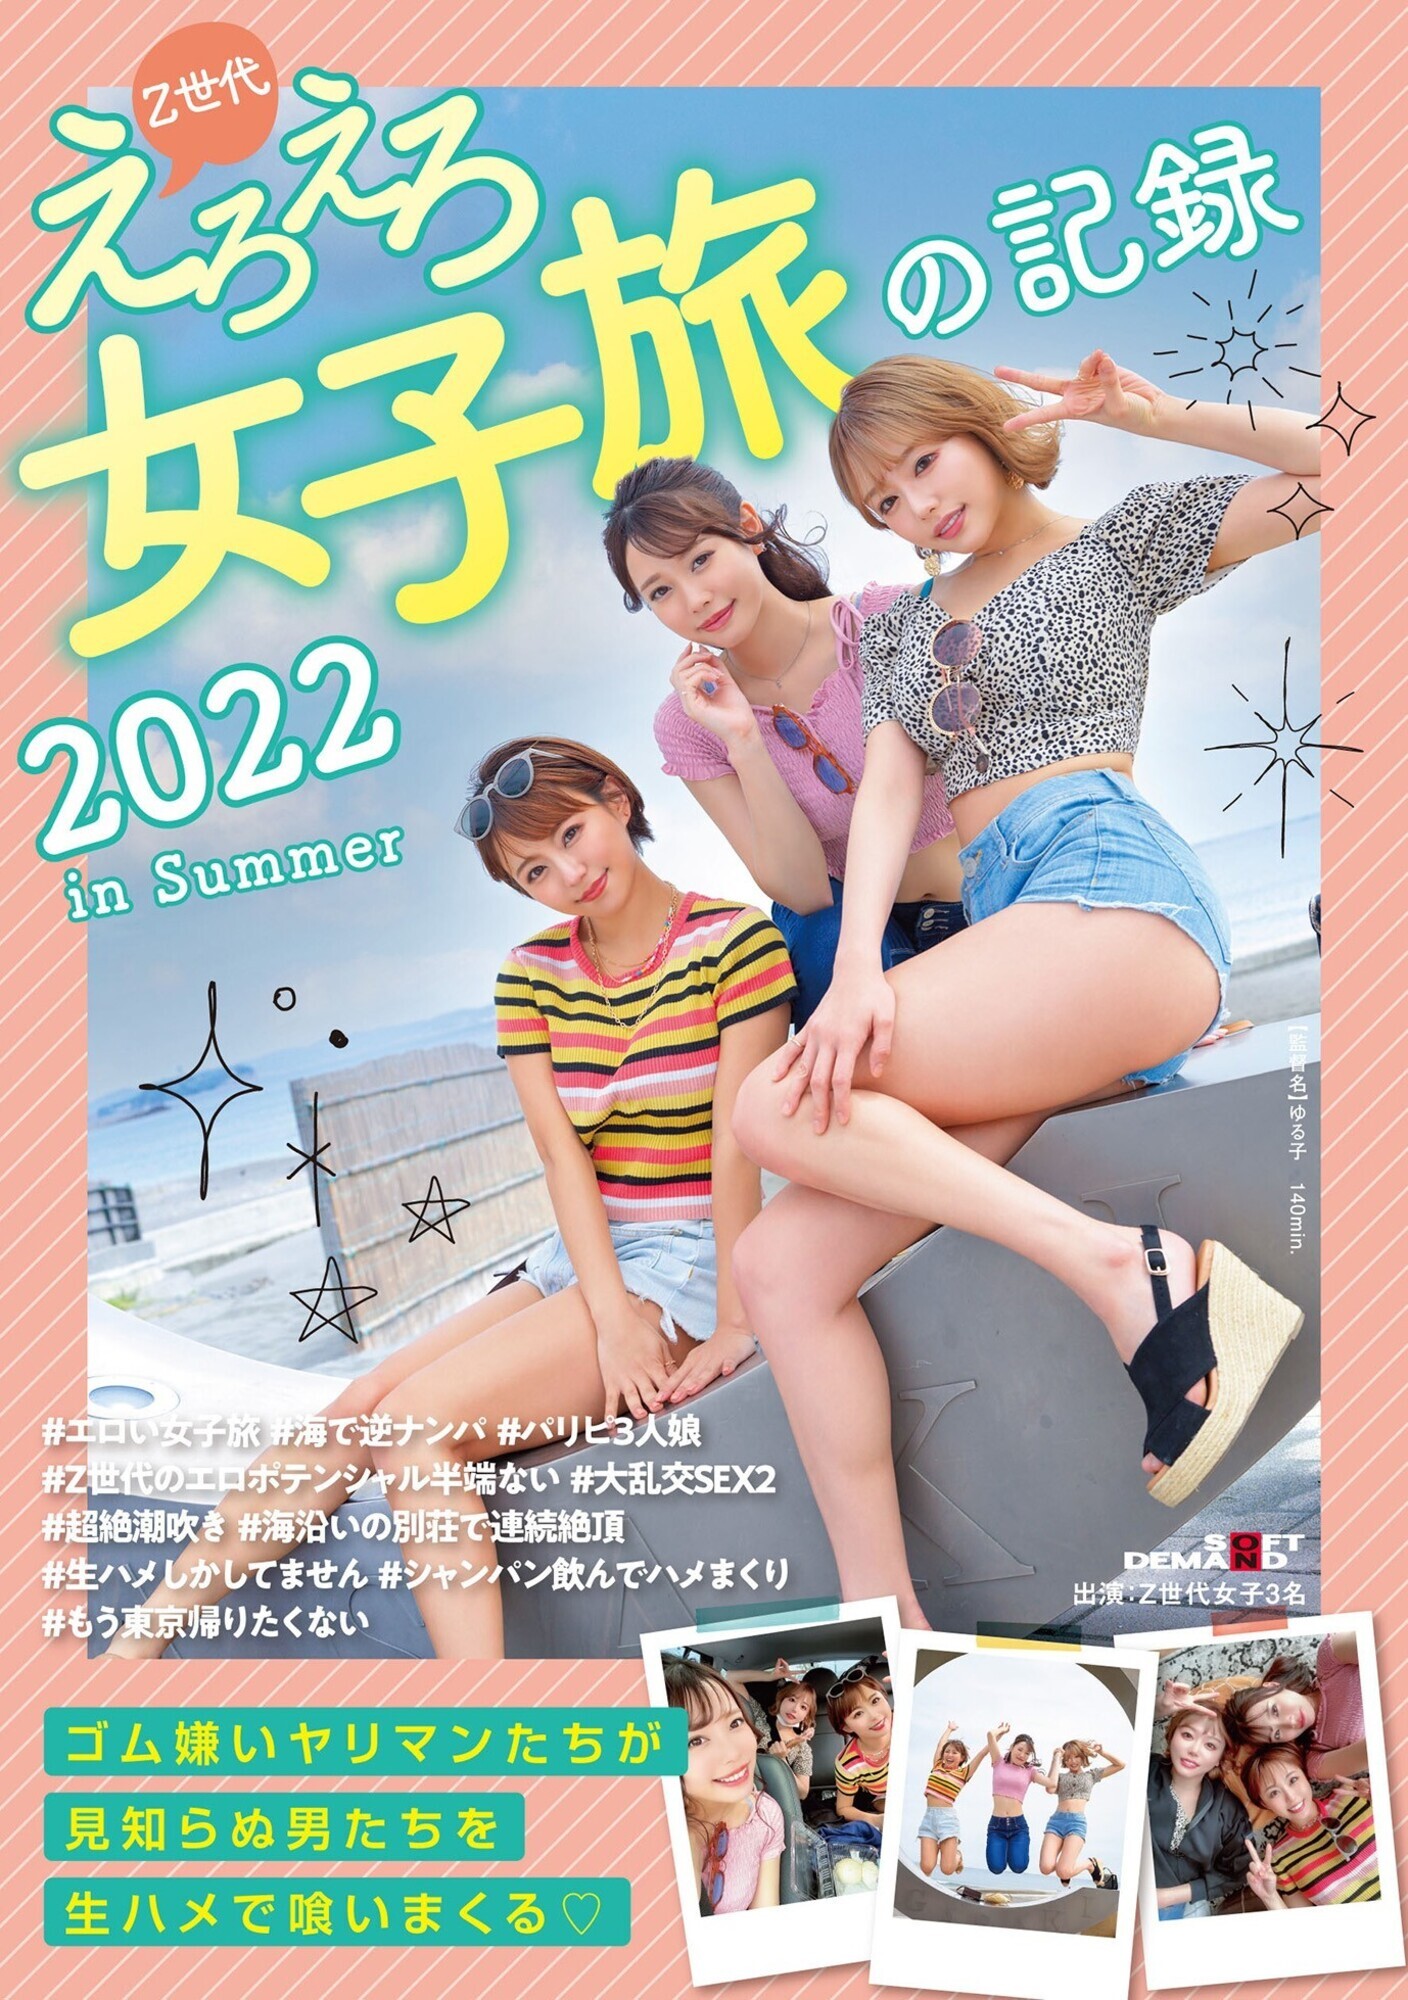 ★【潮吹き】Z世代えろえろ女子旅の記録 2022 in Summer